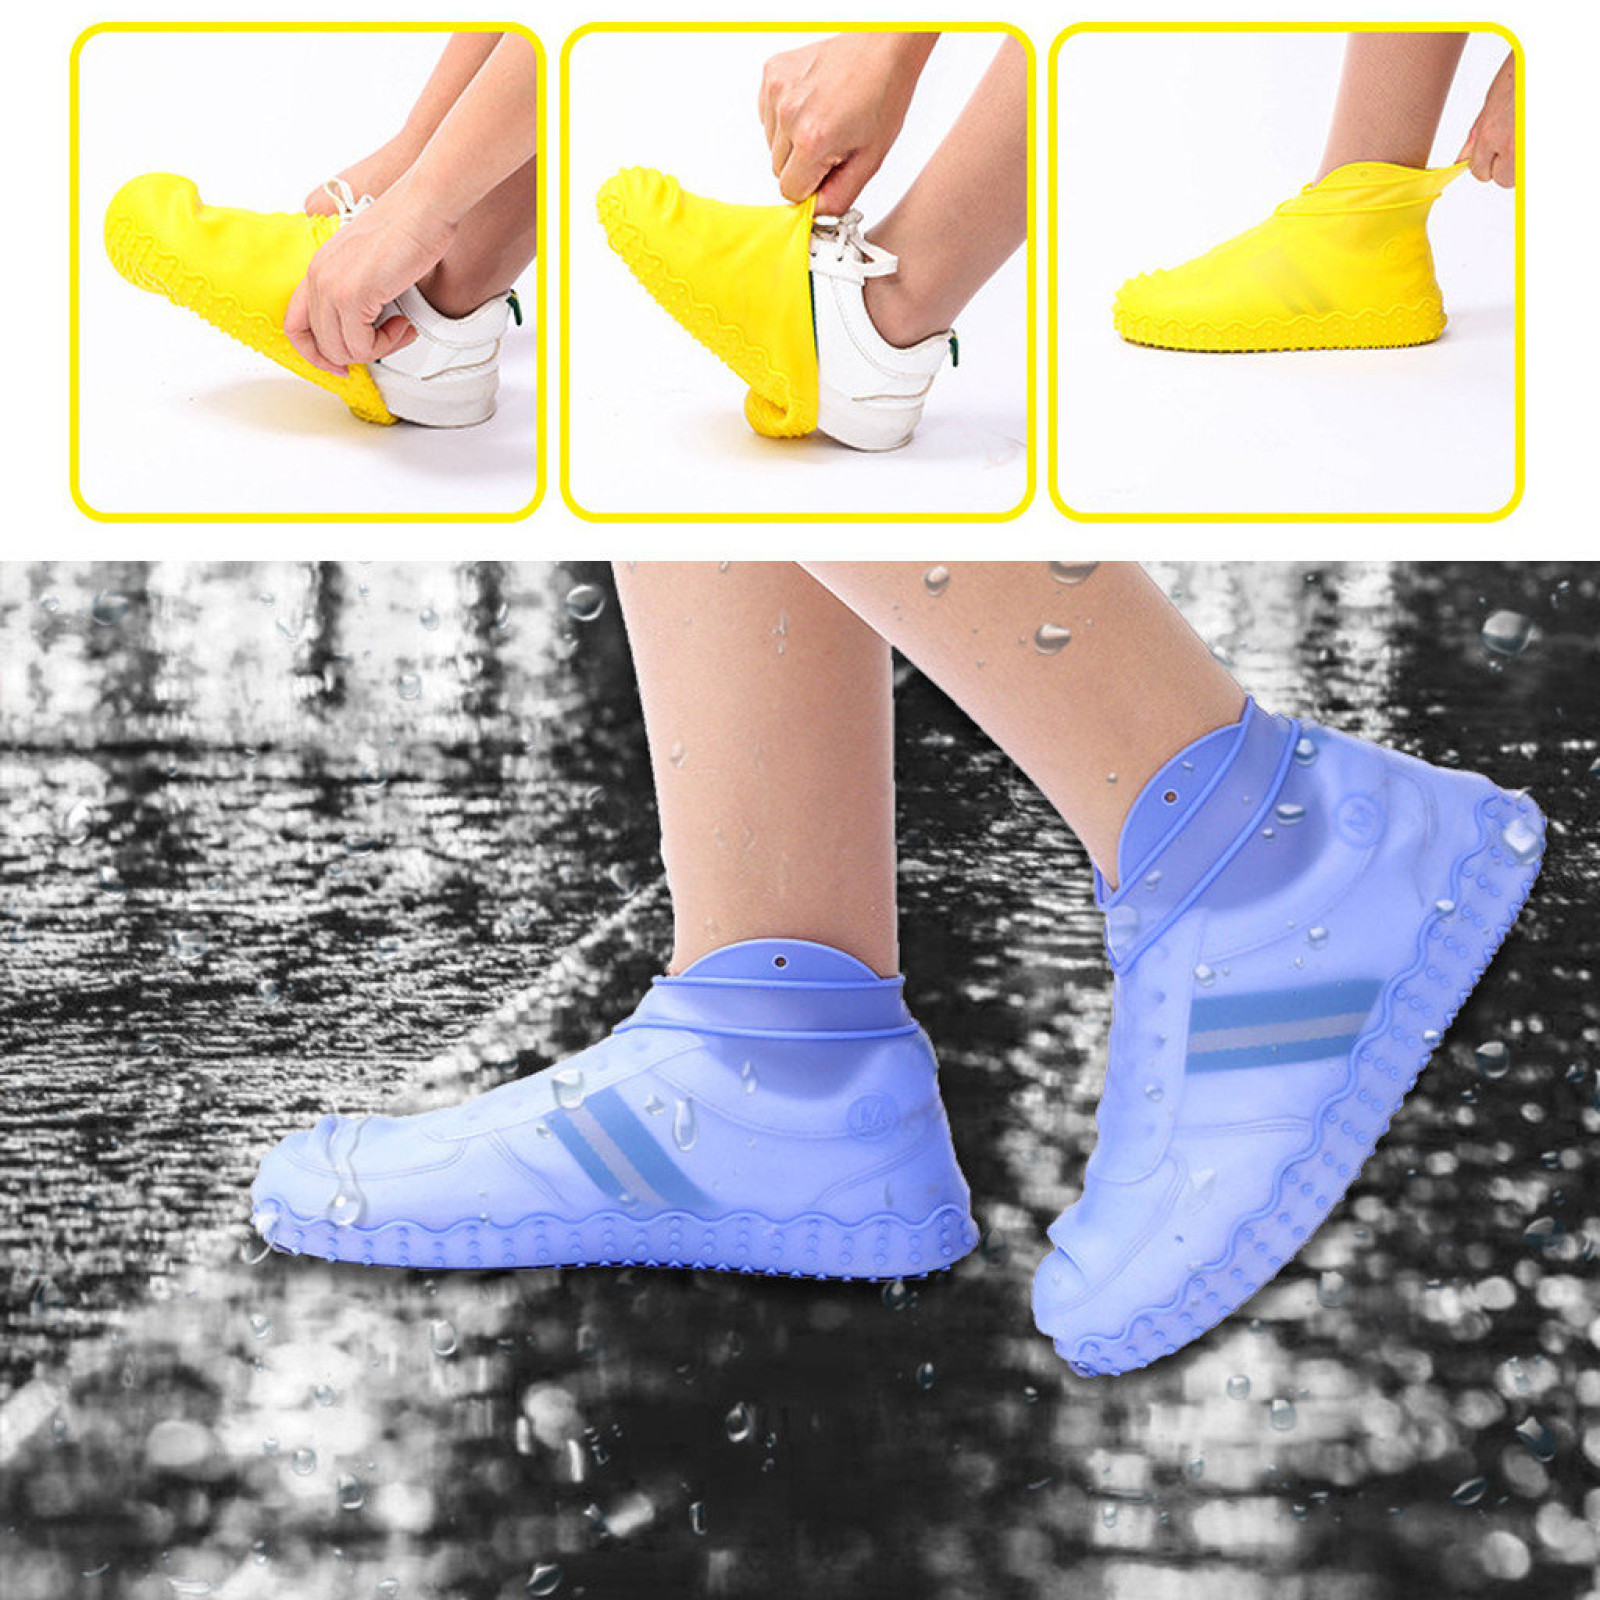 Бахилы чехлы силиконовые водонепроницаемые на обувь от воды и грязи размер S 32-36 см 149562